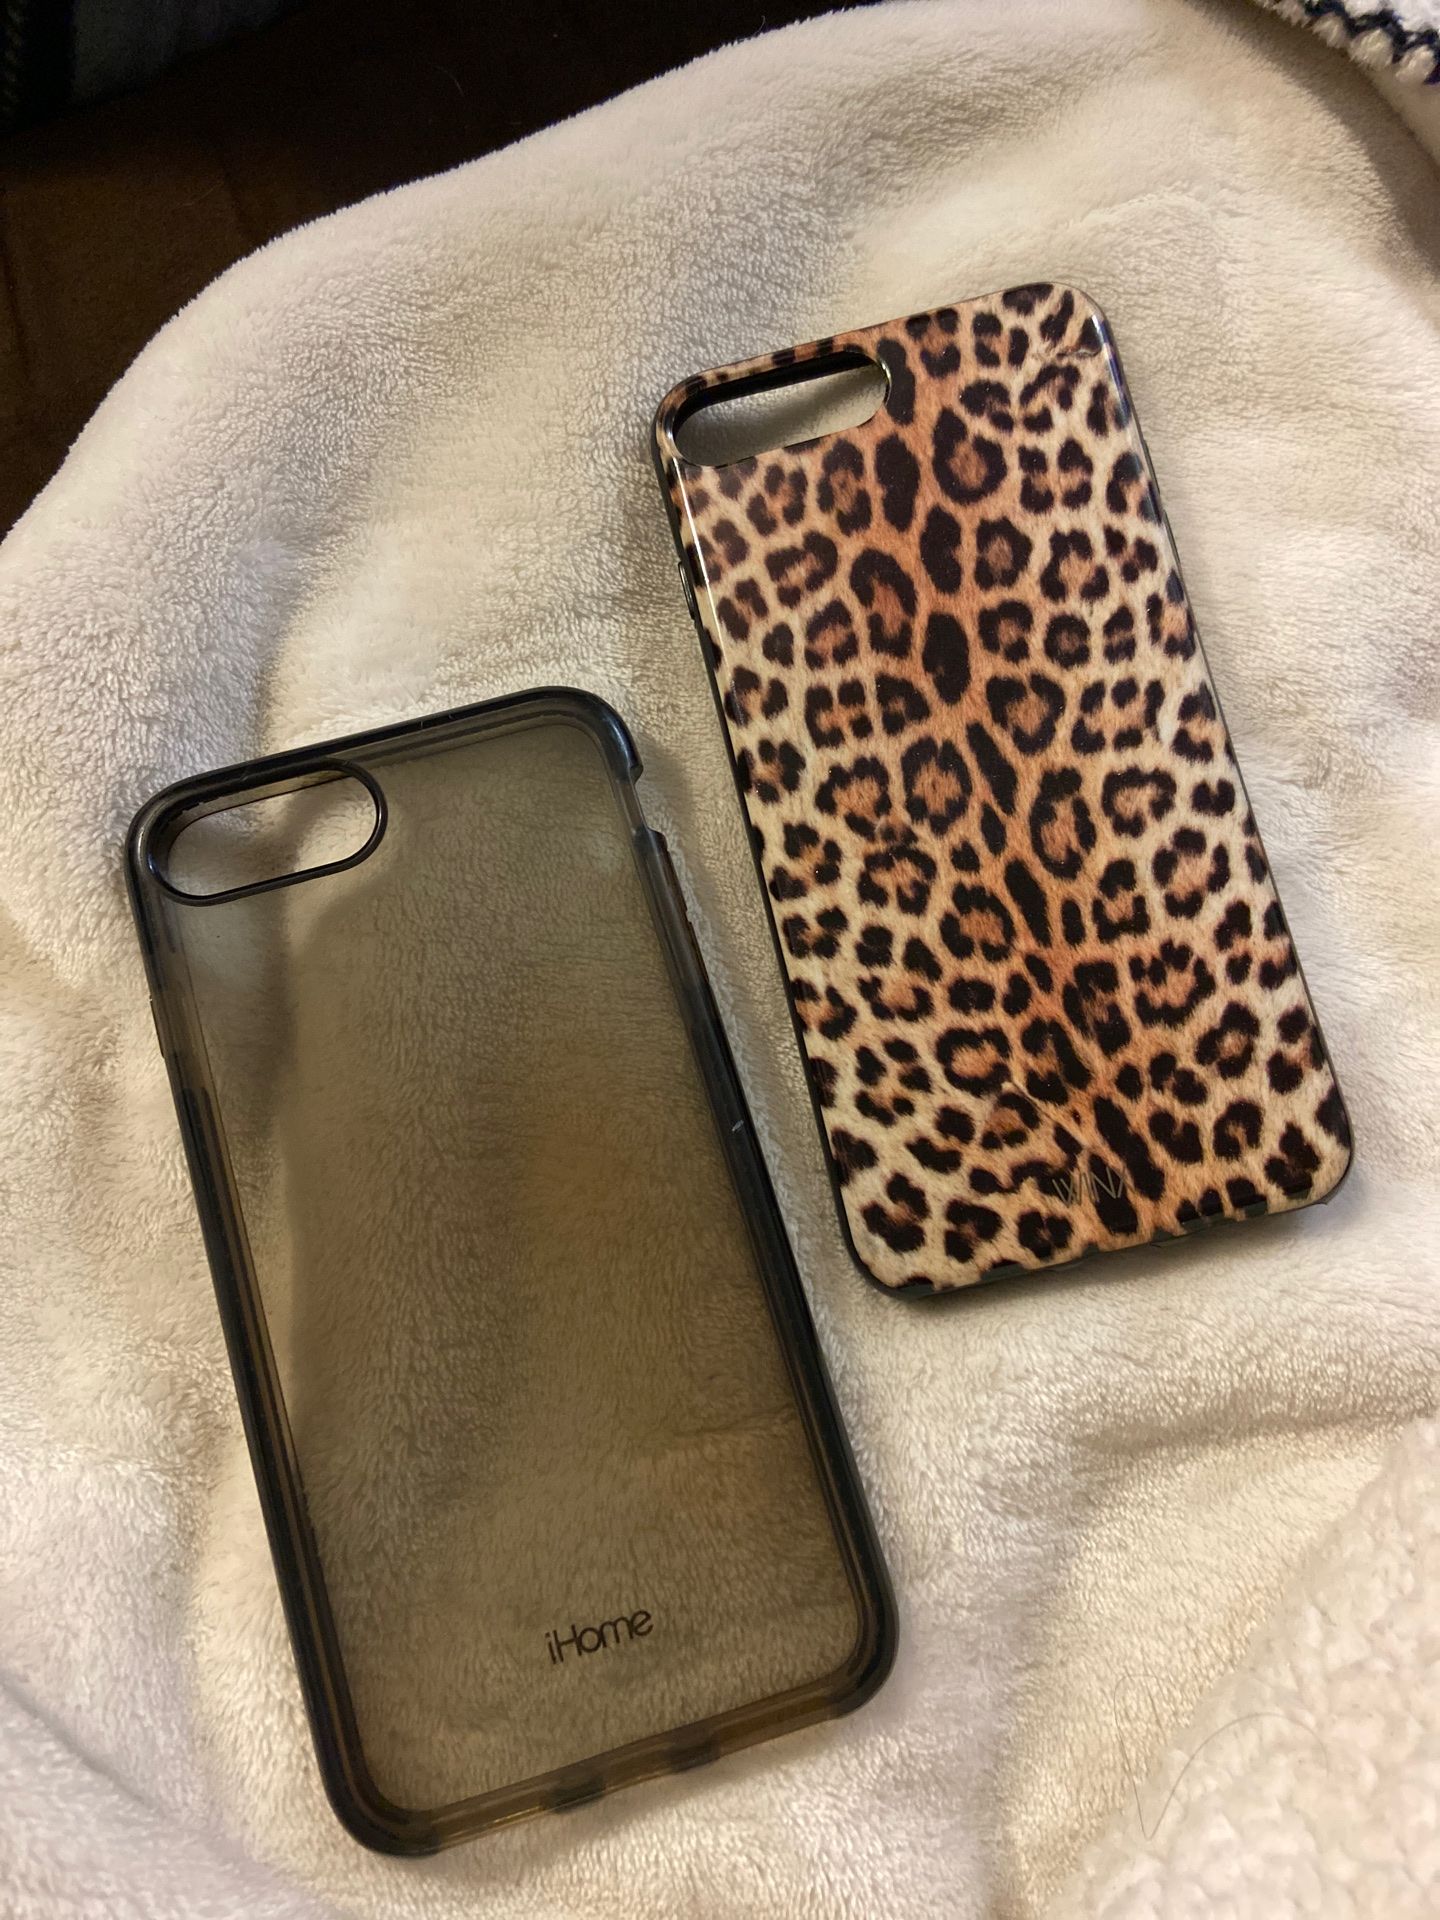 iPhone 7+ cases